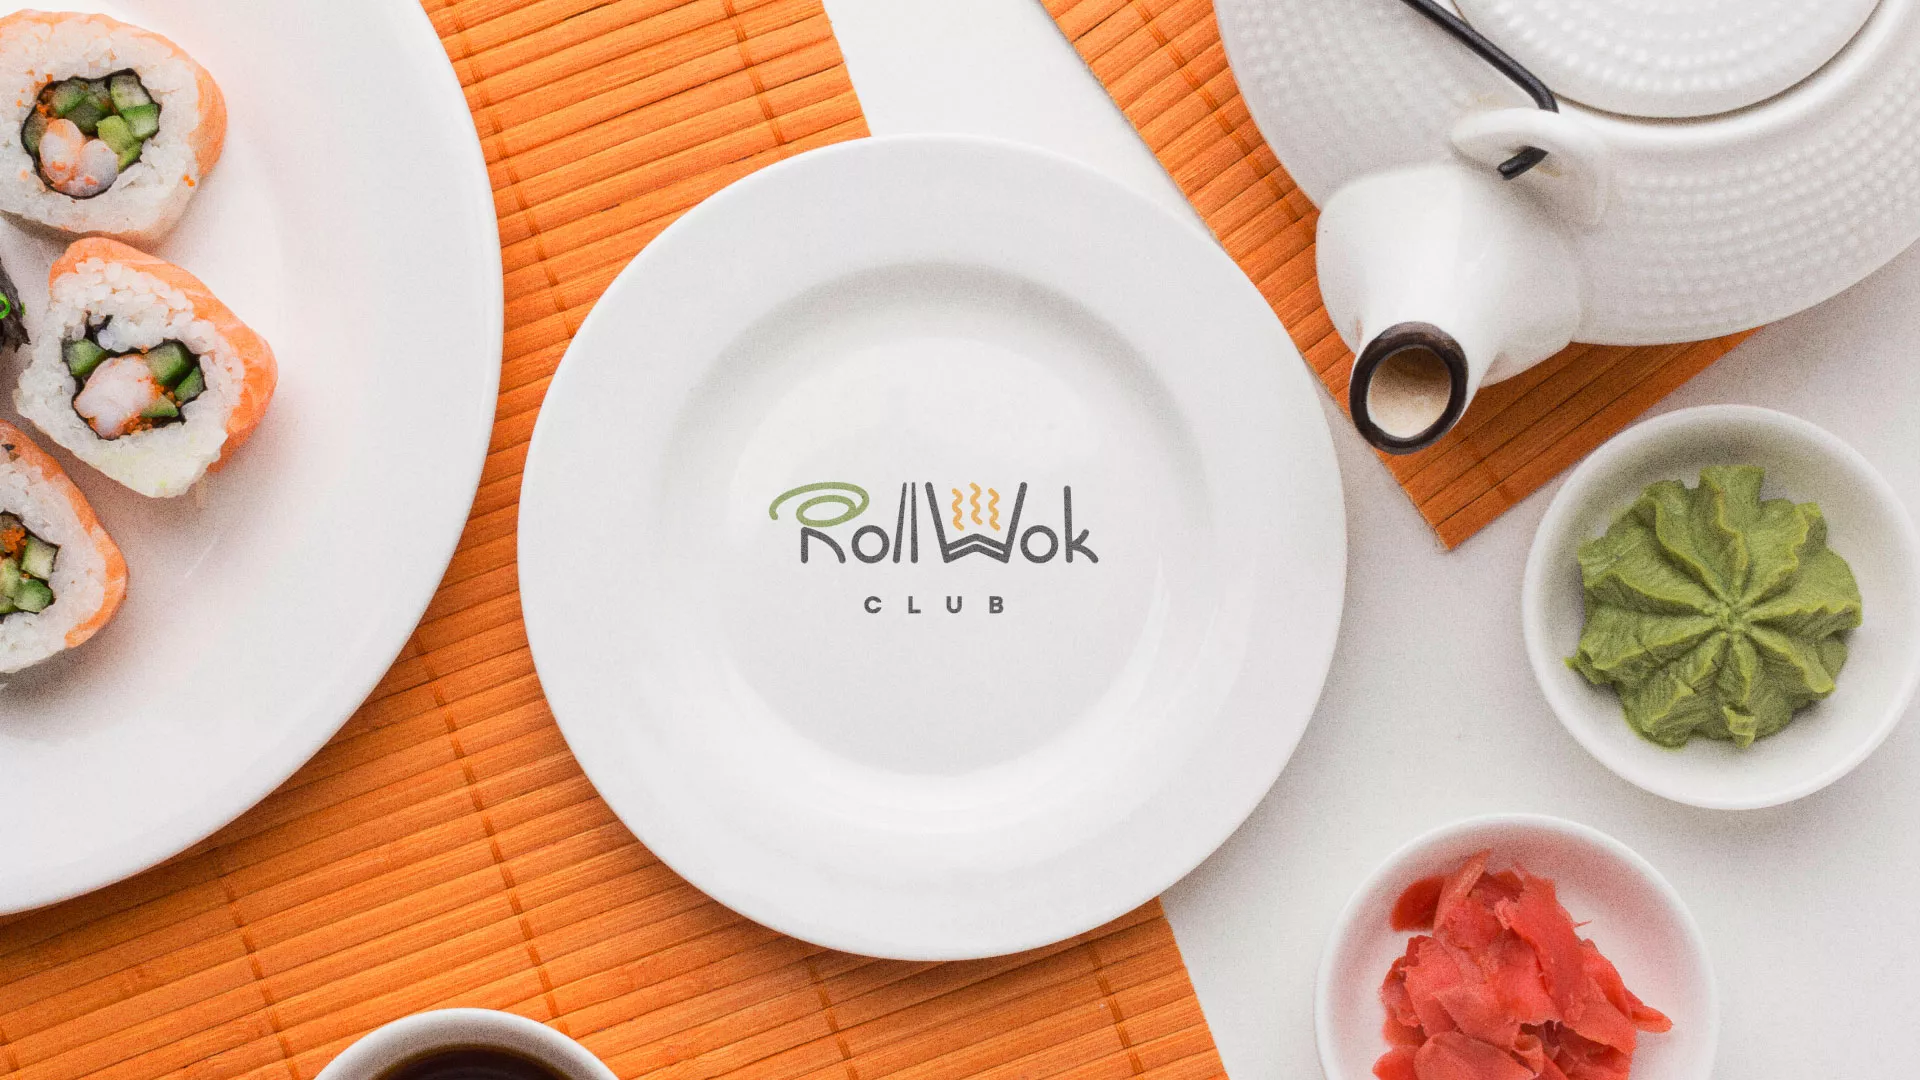 Разработка логотипа и фирменного стиля суши-бара «Roll Wok Club» в Кирсе